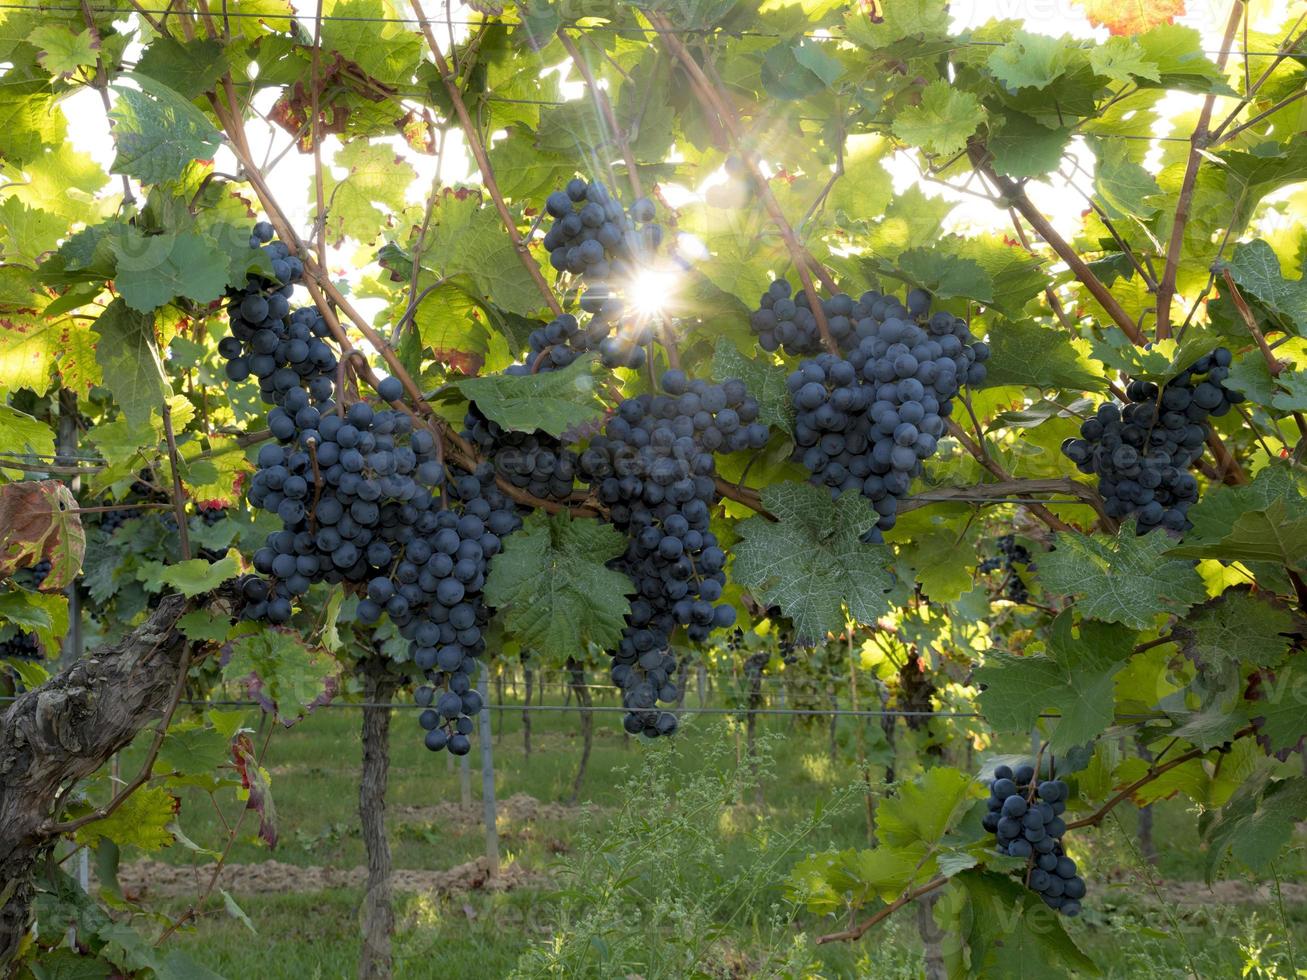 rijpe blauwe druiven hangen in het directe tegenlicht van de zon op de struik foto